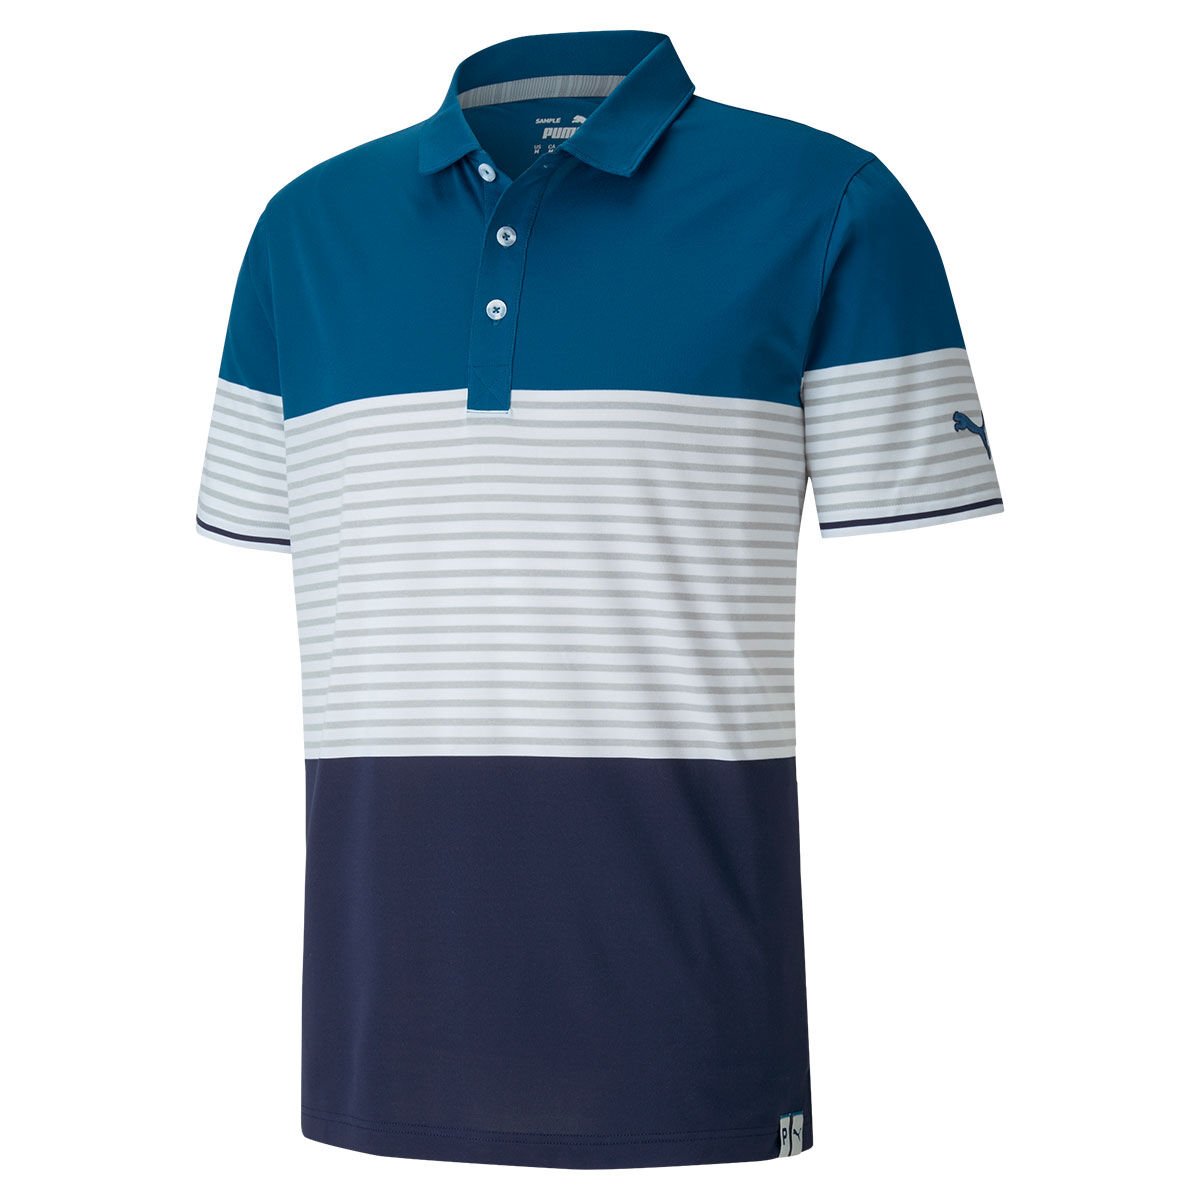 PUMA GOLF Cloudspun Taylor Golf Polo Shirt - Payless4golf - price ...